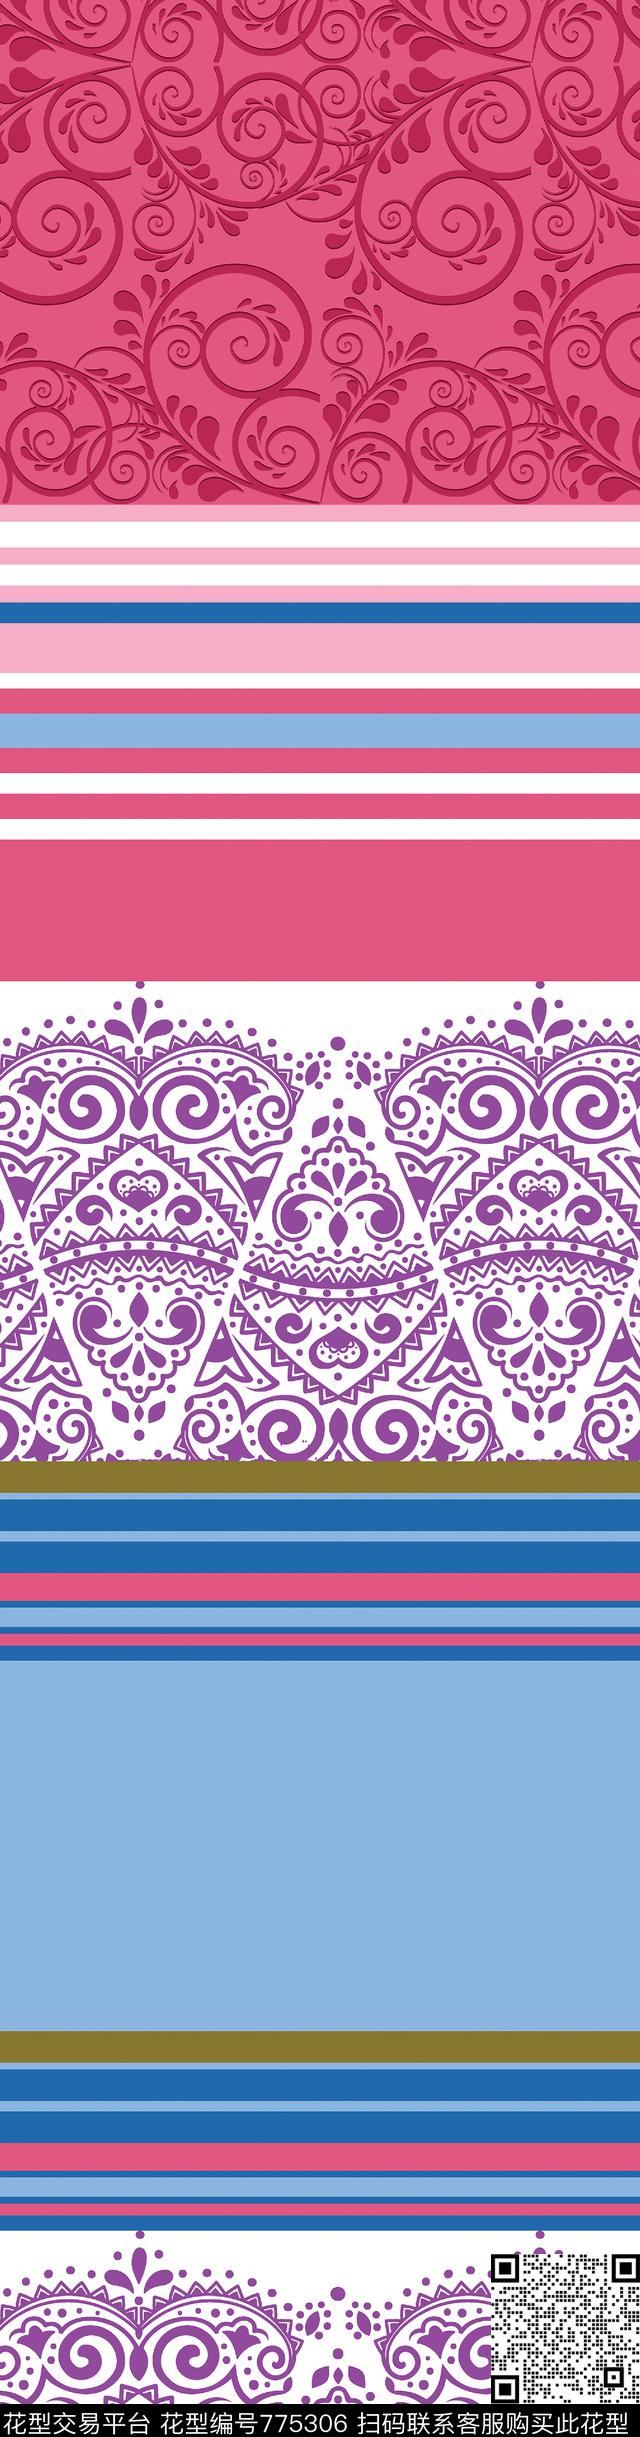 bedset 02.jpg - 775306 - design textile bedset - 传统印花花型 － 床品花型设计 － 瓦栏